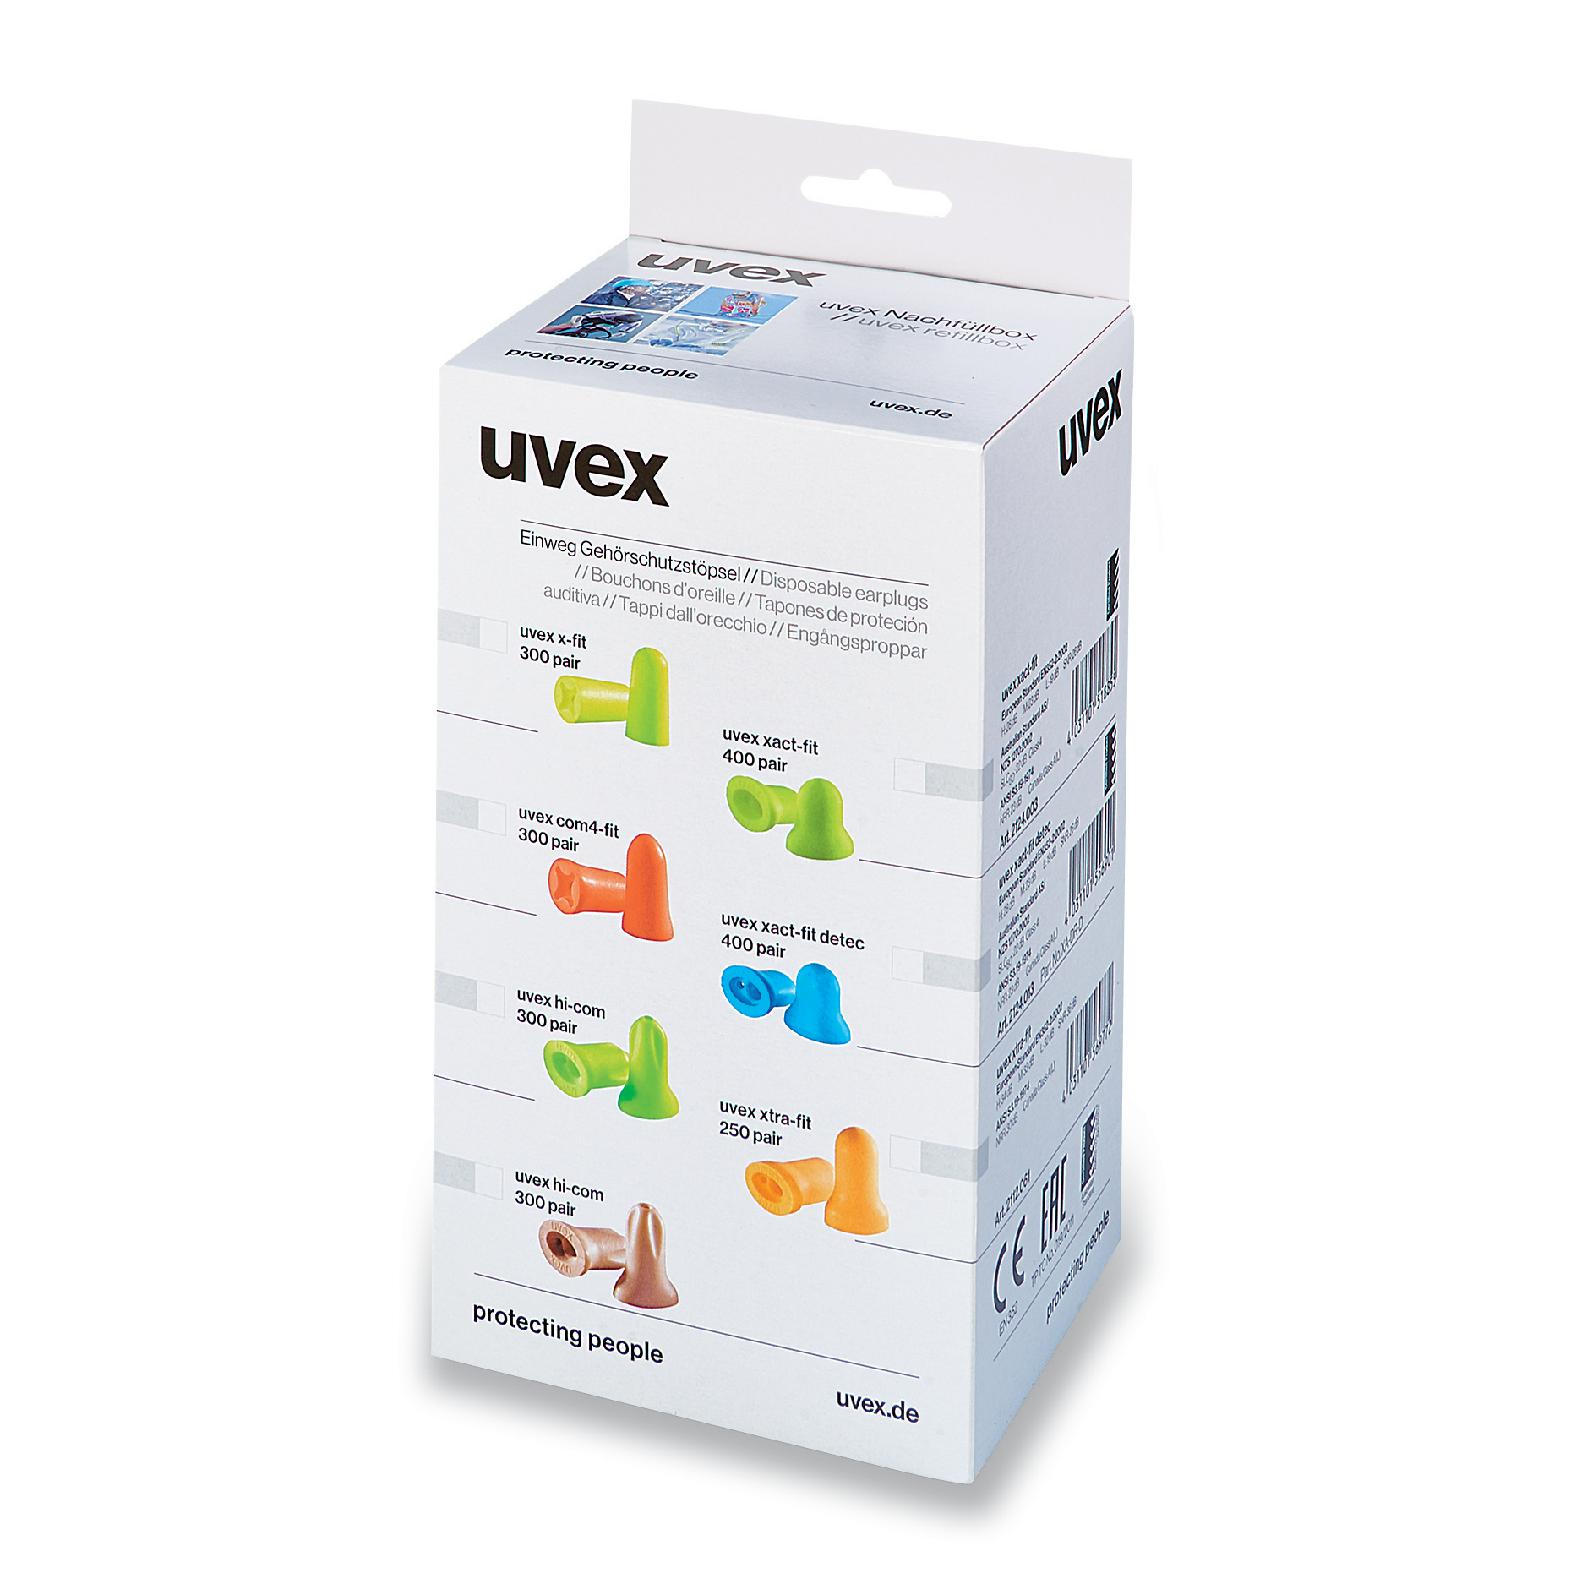 uvex com4-fit Nachfüllbox für Dispenser